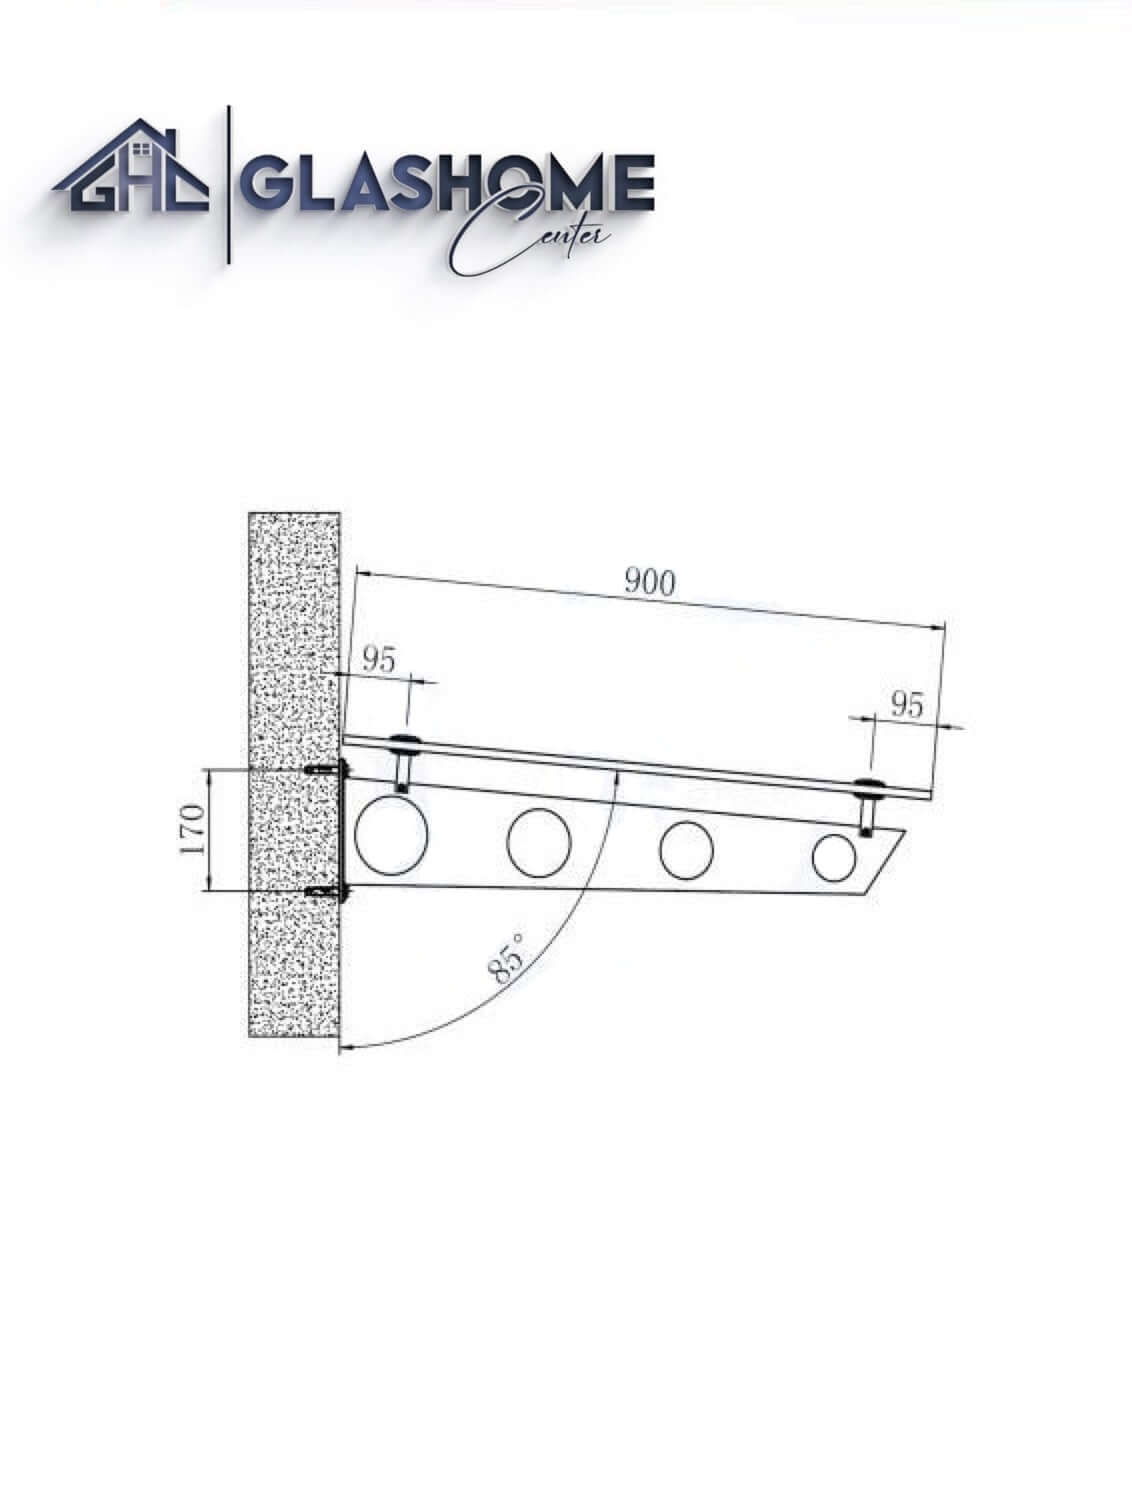 GlasHomeCenter - Glasvordach - Grauglas - 180x90cm - 13.1mm VSG - inkl. 2 schwarze Edelstahlhalterungen Variante "Stockholm"